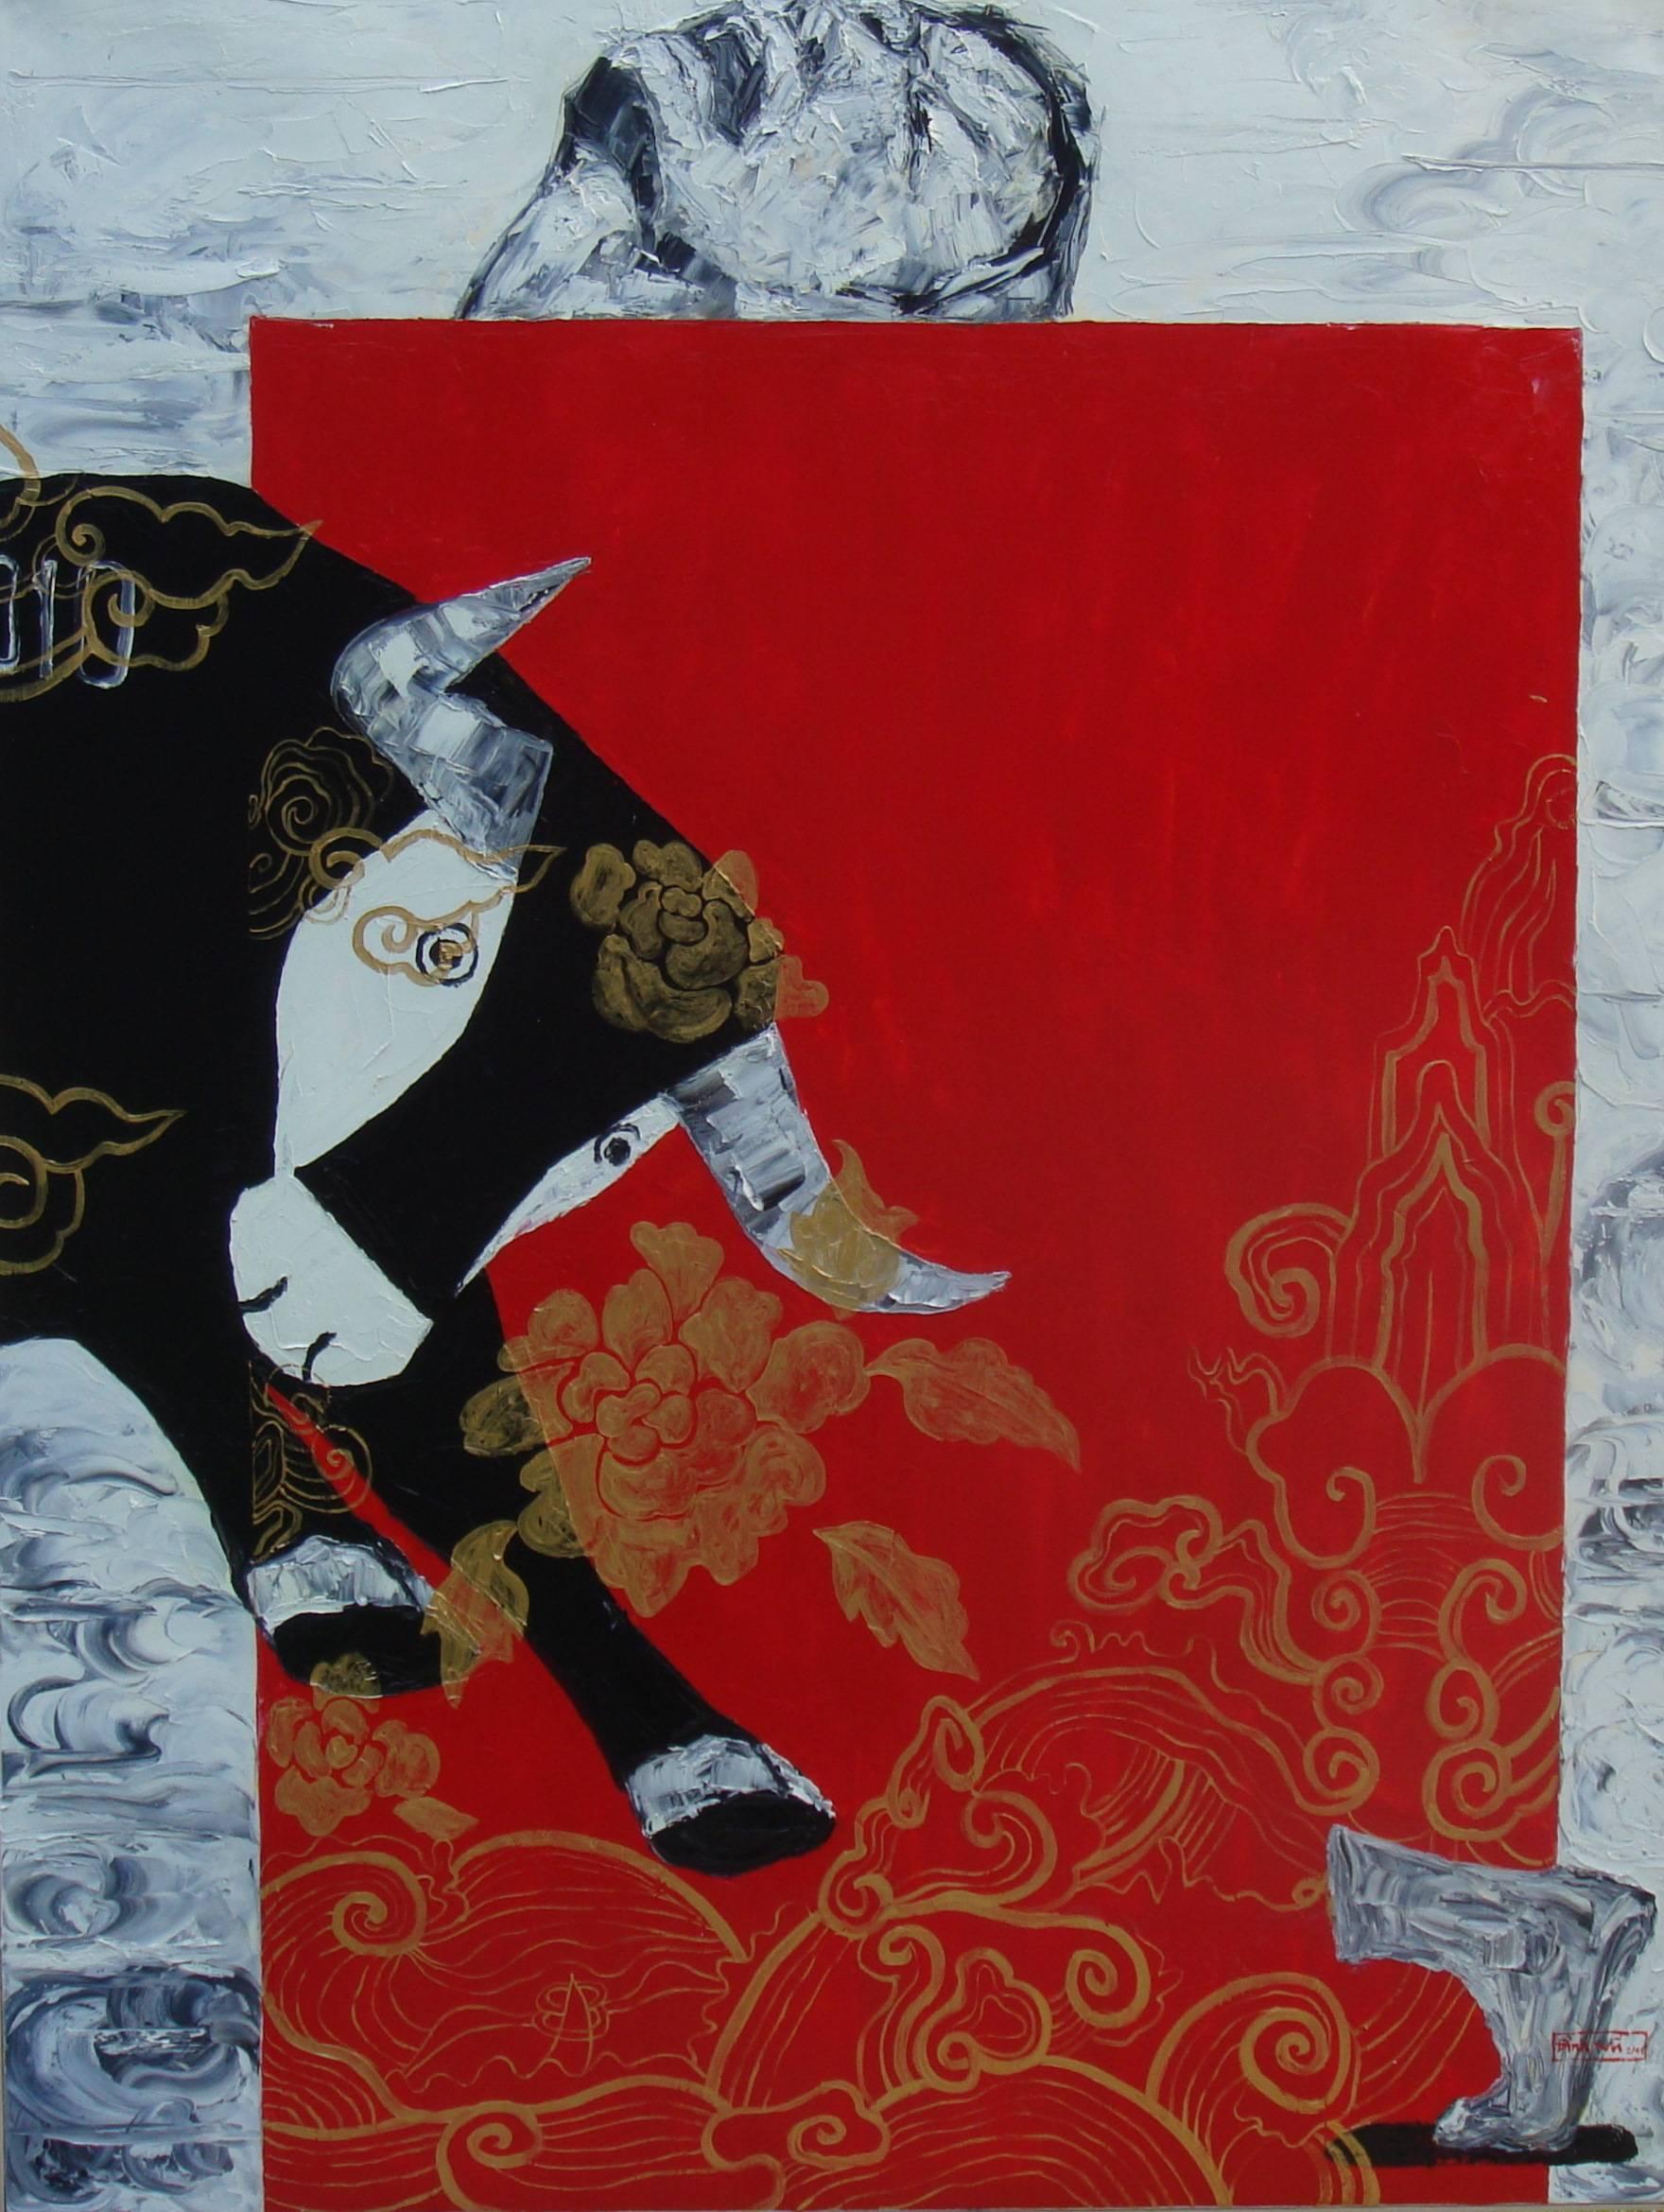 Figurative Painting Nguyen Dinh Vu - « My Pet Bull », huile sur toile d'un taureau noir avec rouge, noir, or, bleu et gris